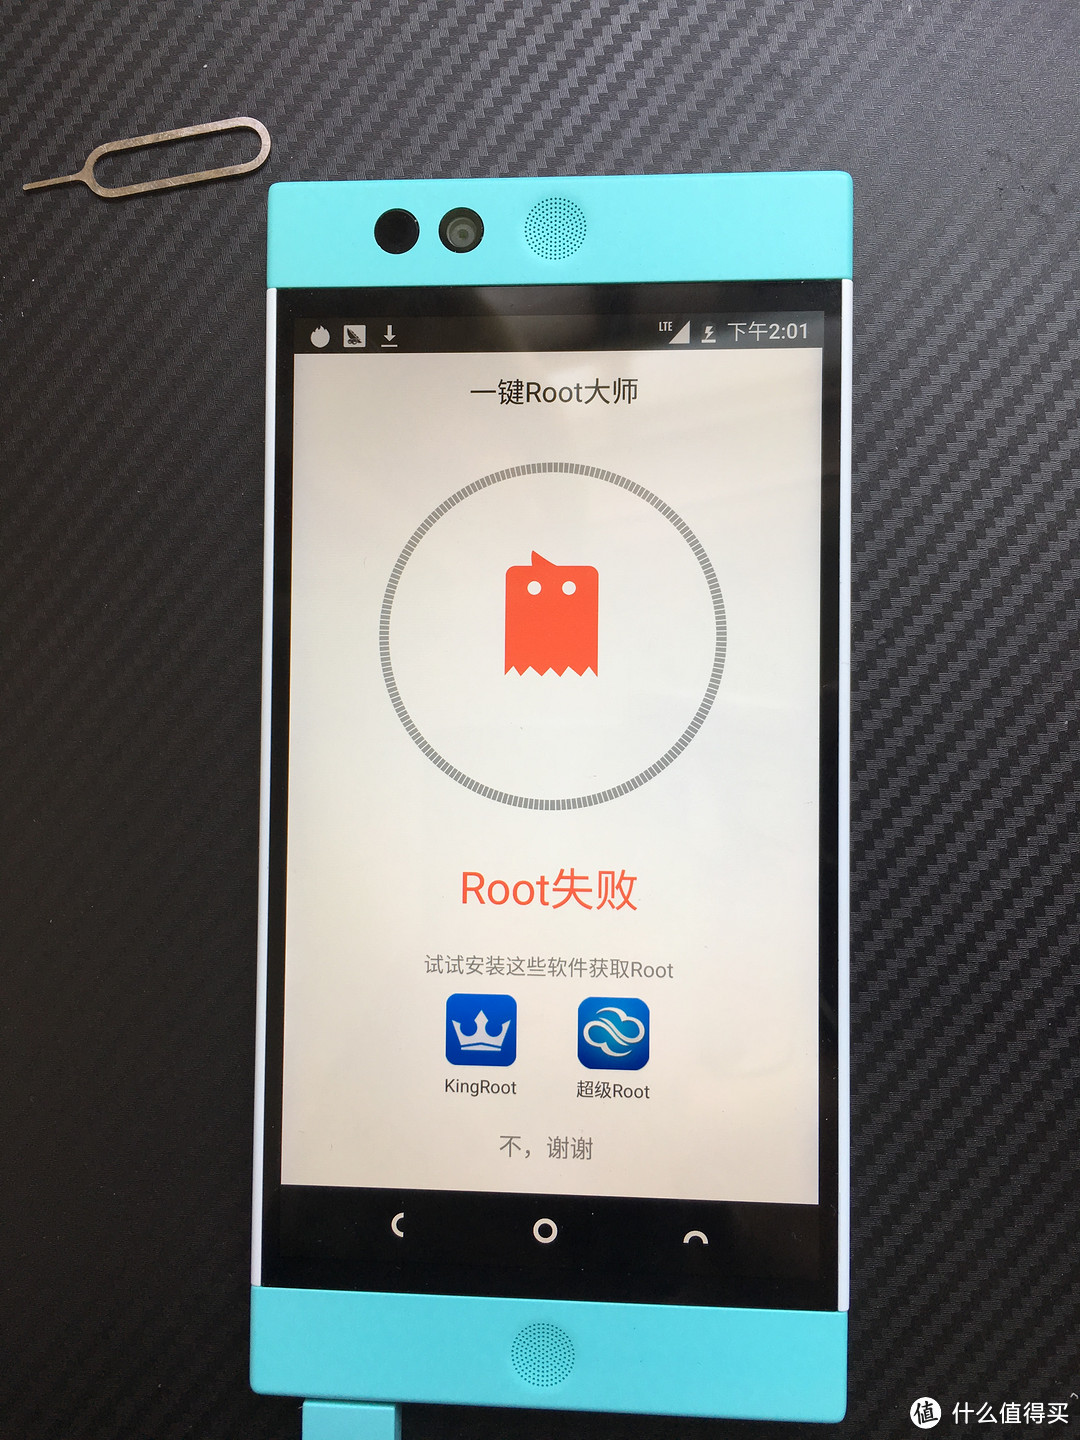 #本站首晒# 来自云端的问候 — Nextbit Robin 智能手机 初体验